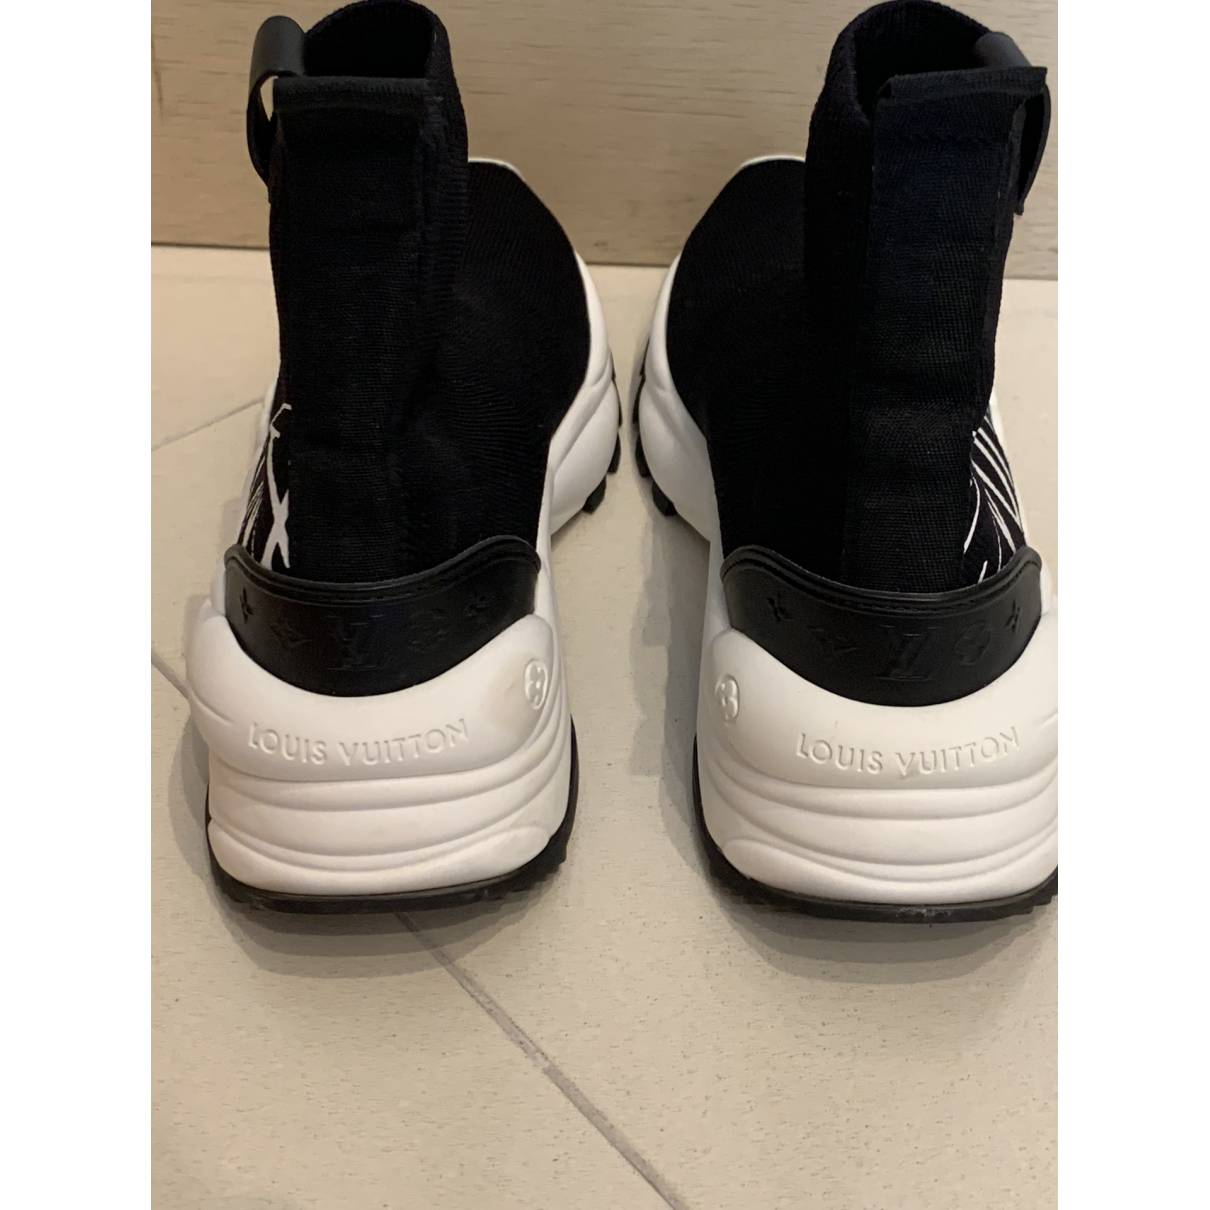 Louis Vuitton Run 55 Sneaker BLACK. Size 36.0